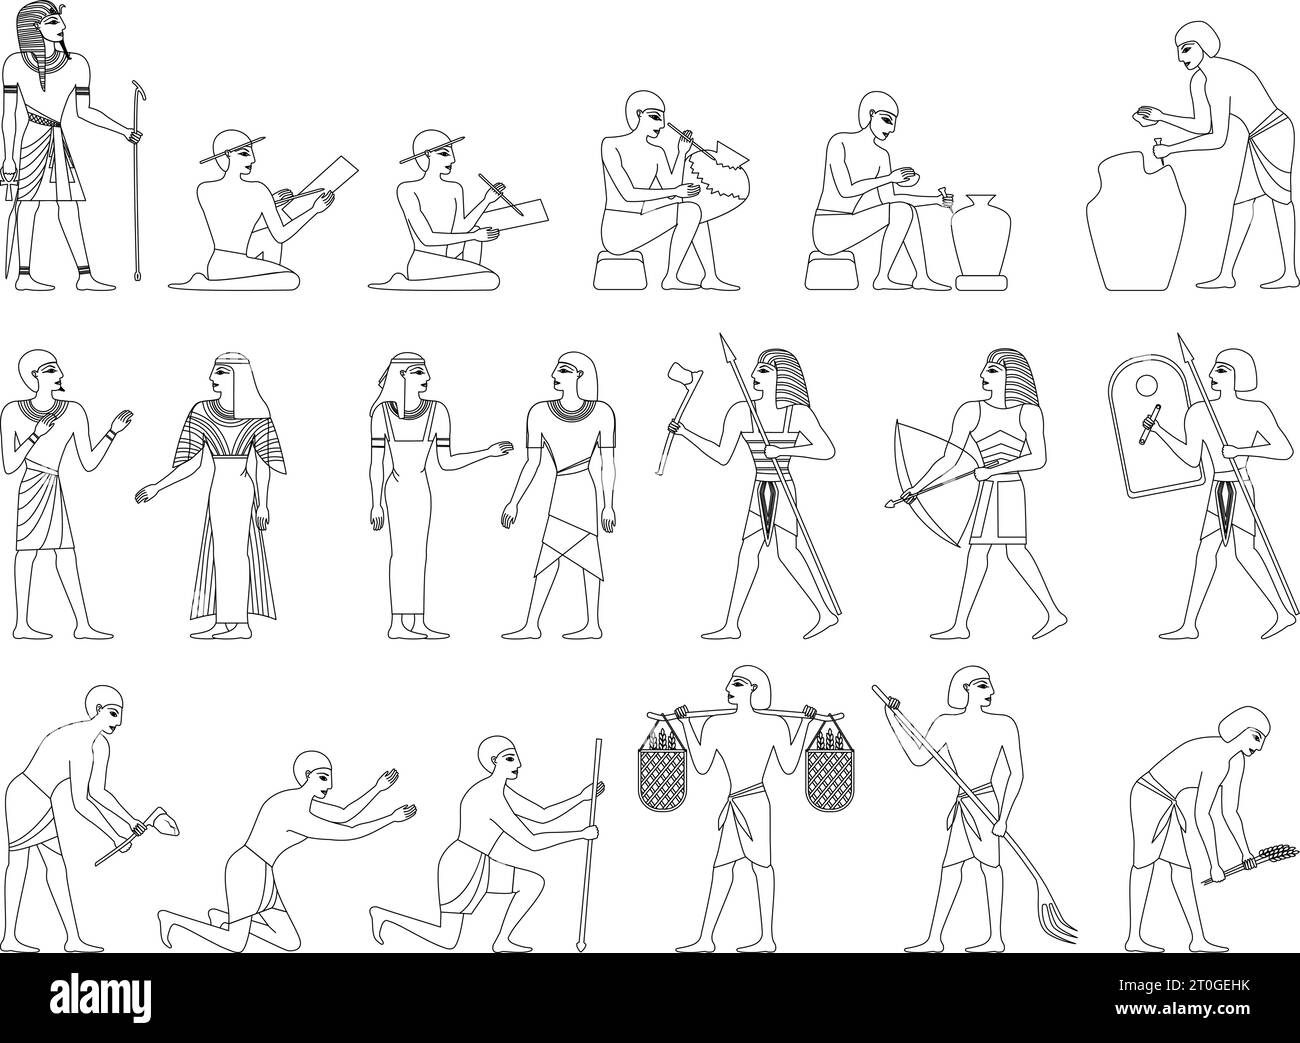 Ensemble monochrome de la société de l'egypte ancienne avec des icônes isolées Wireframe personnages humains des egyptiens sur illustration vectorielle de fond blanc Illustration de Vecteur